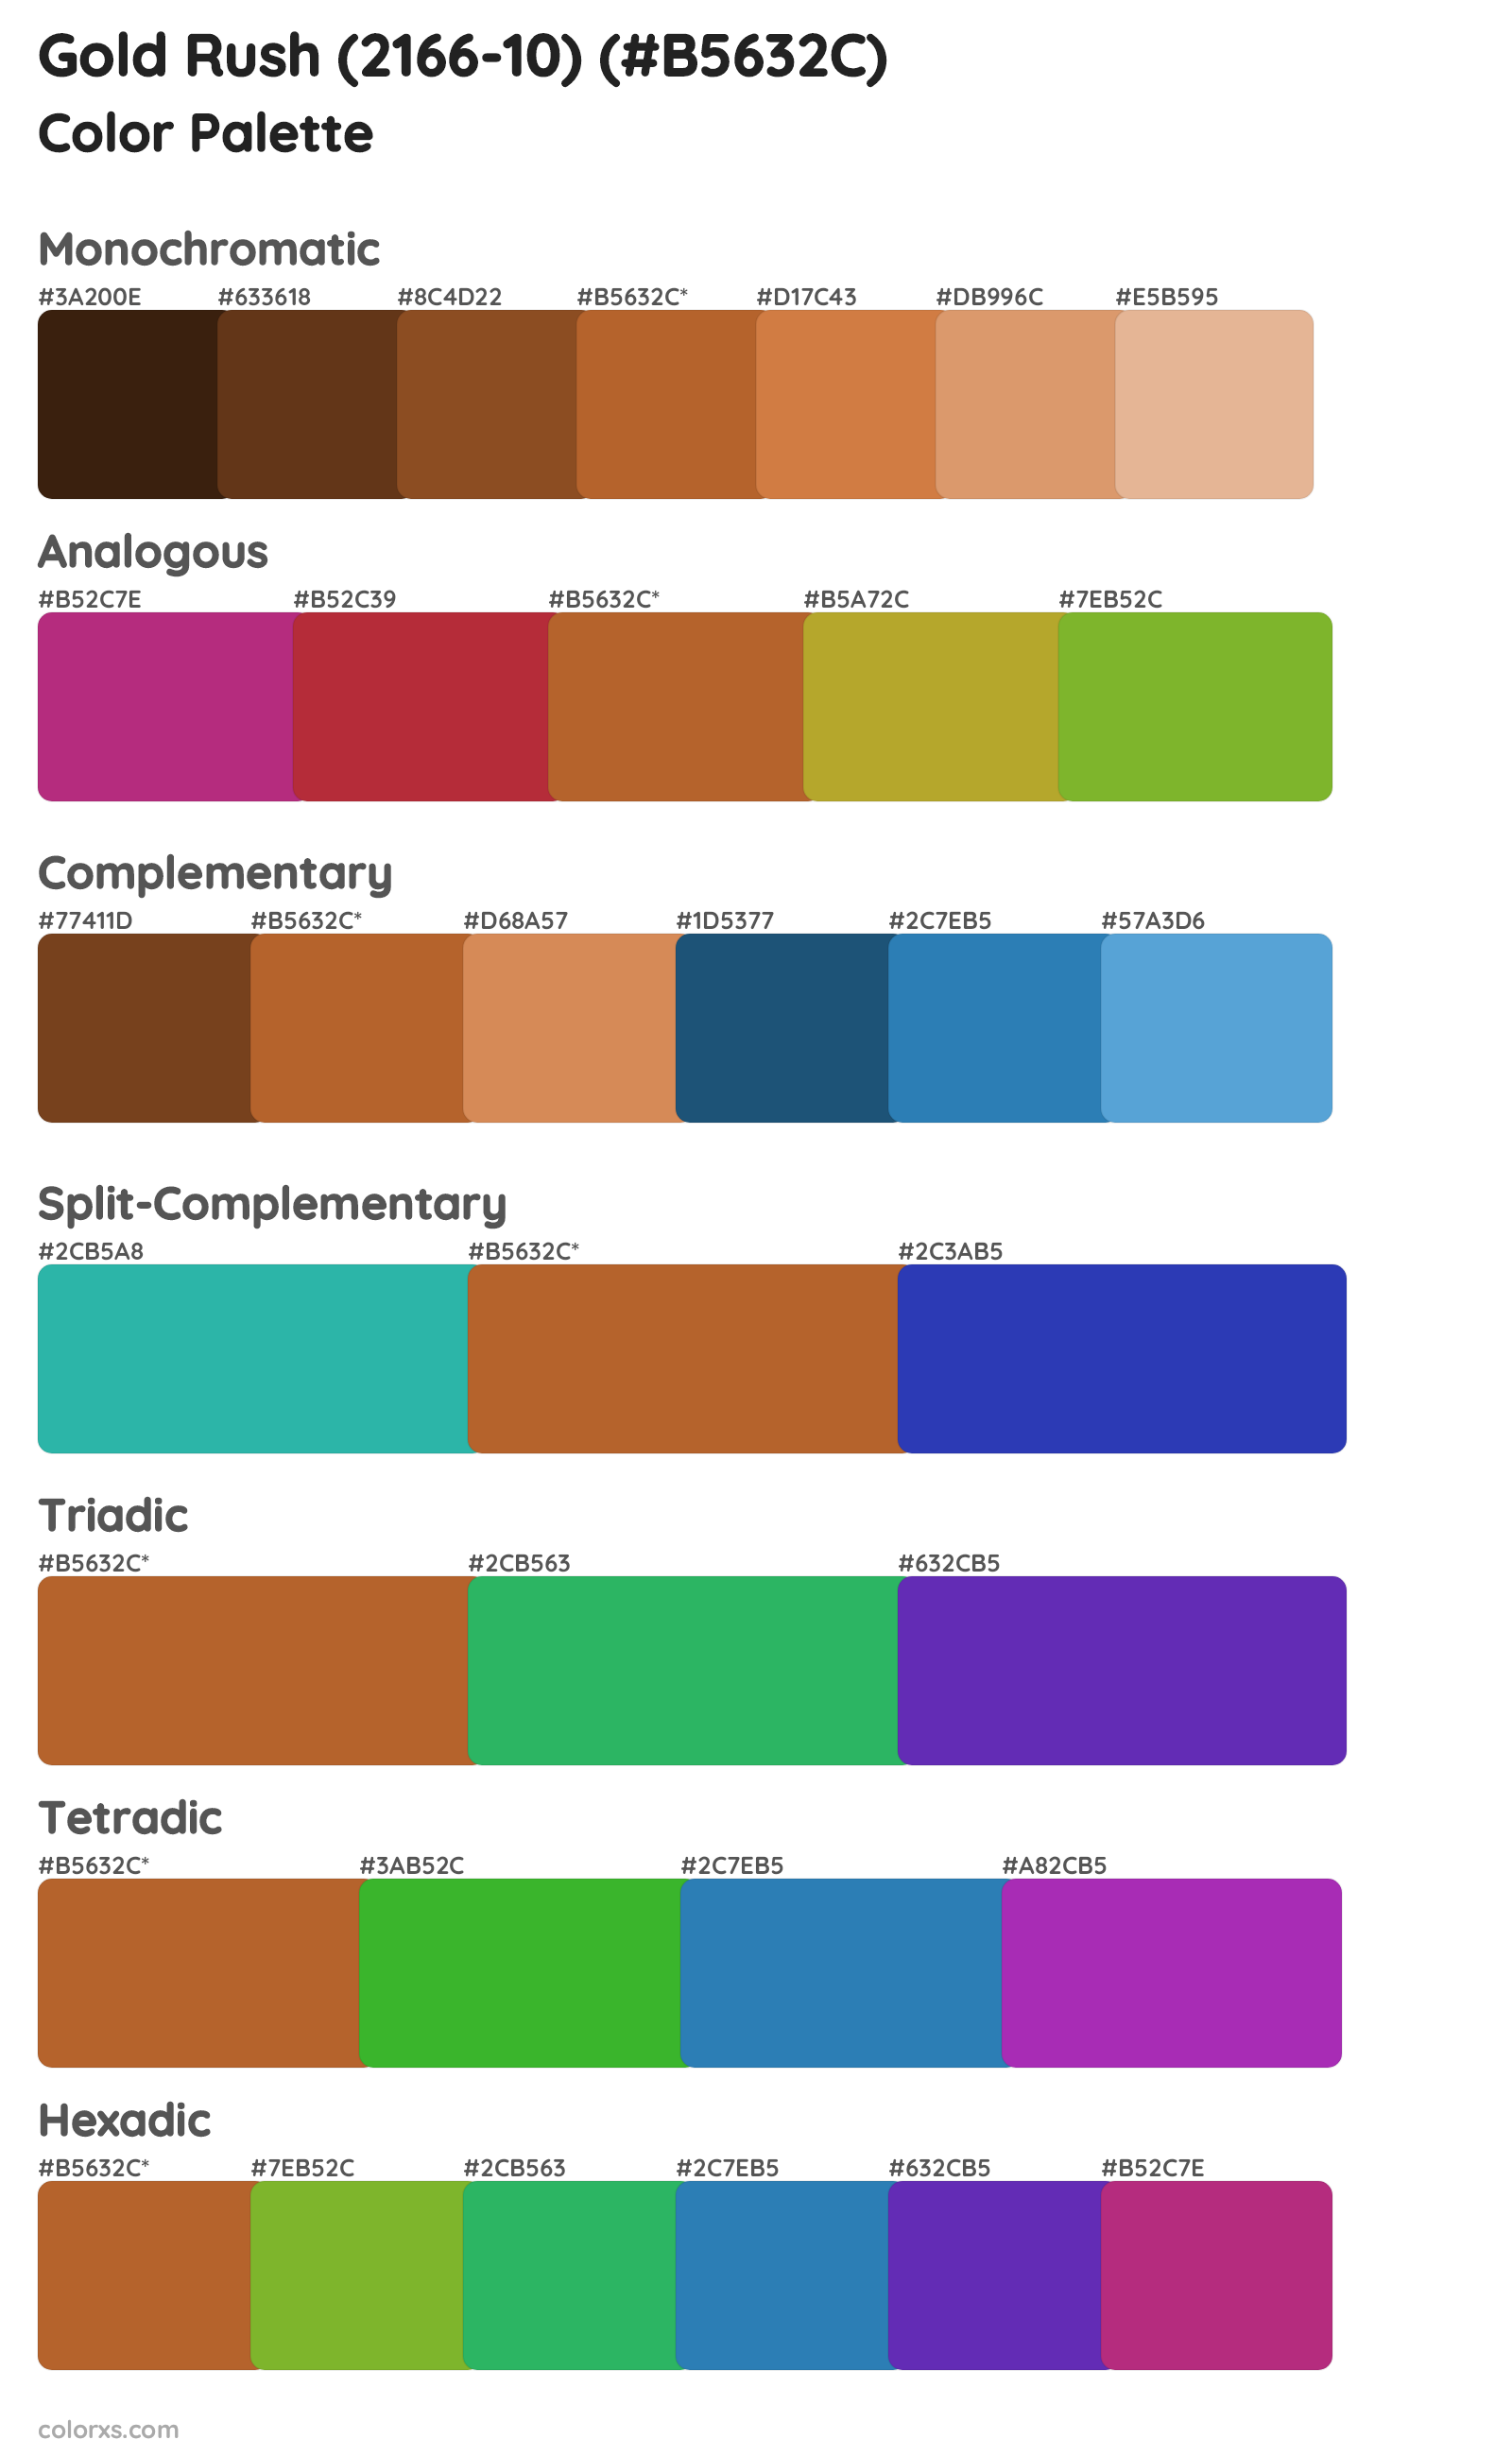 Gold Rush (2166-10) Color Scheme Palettes